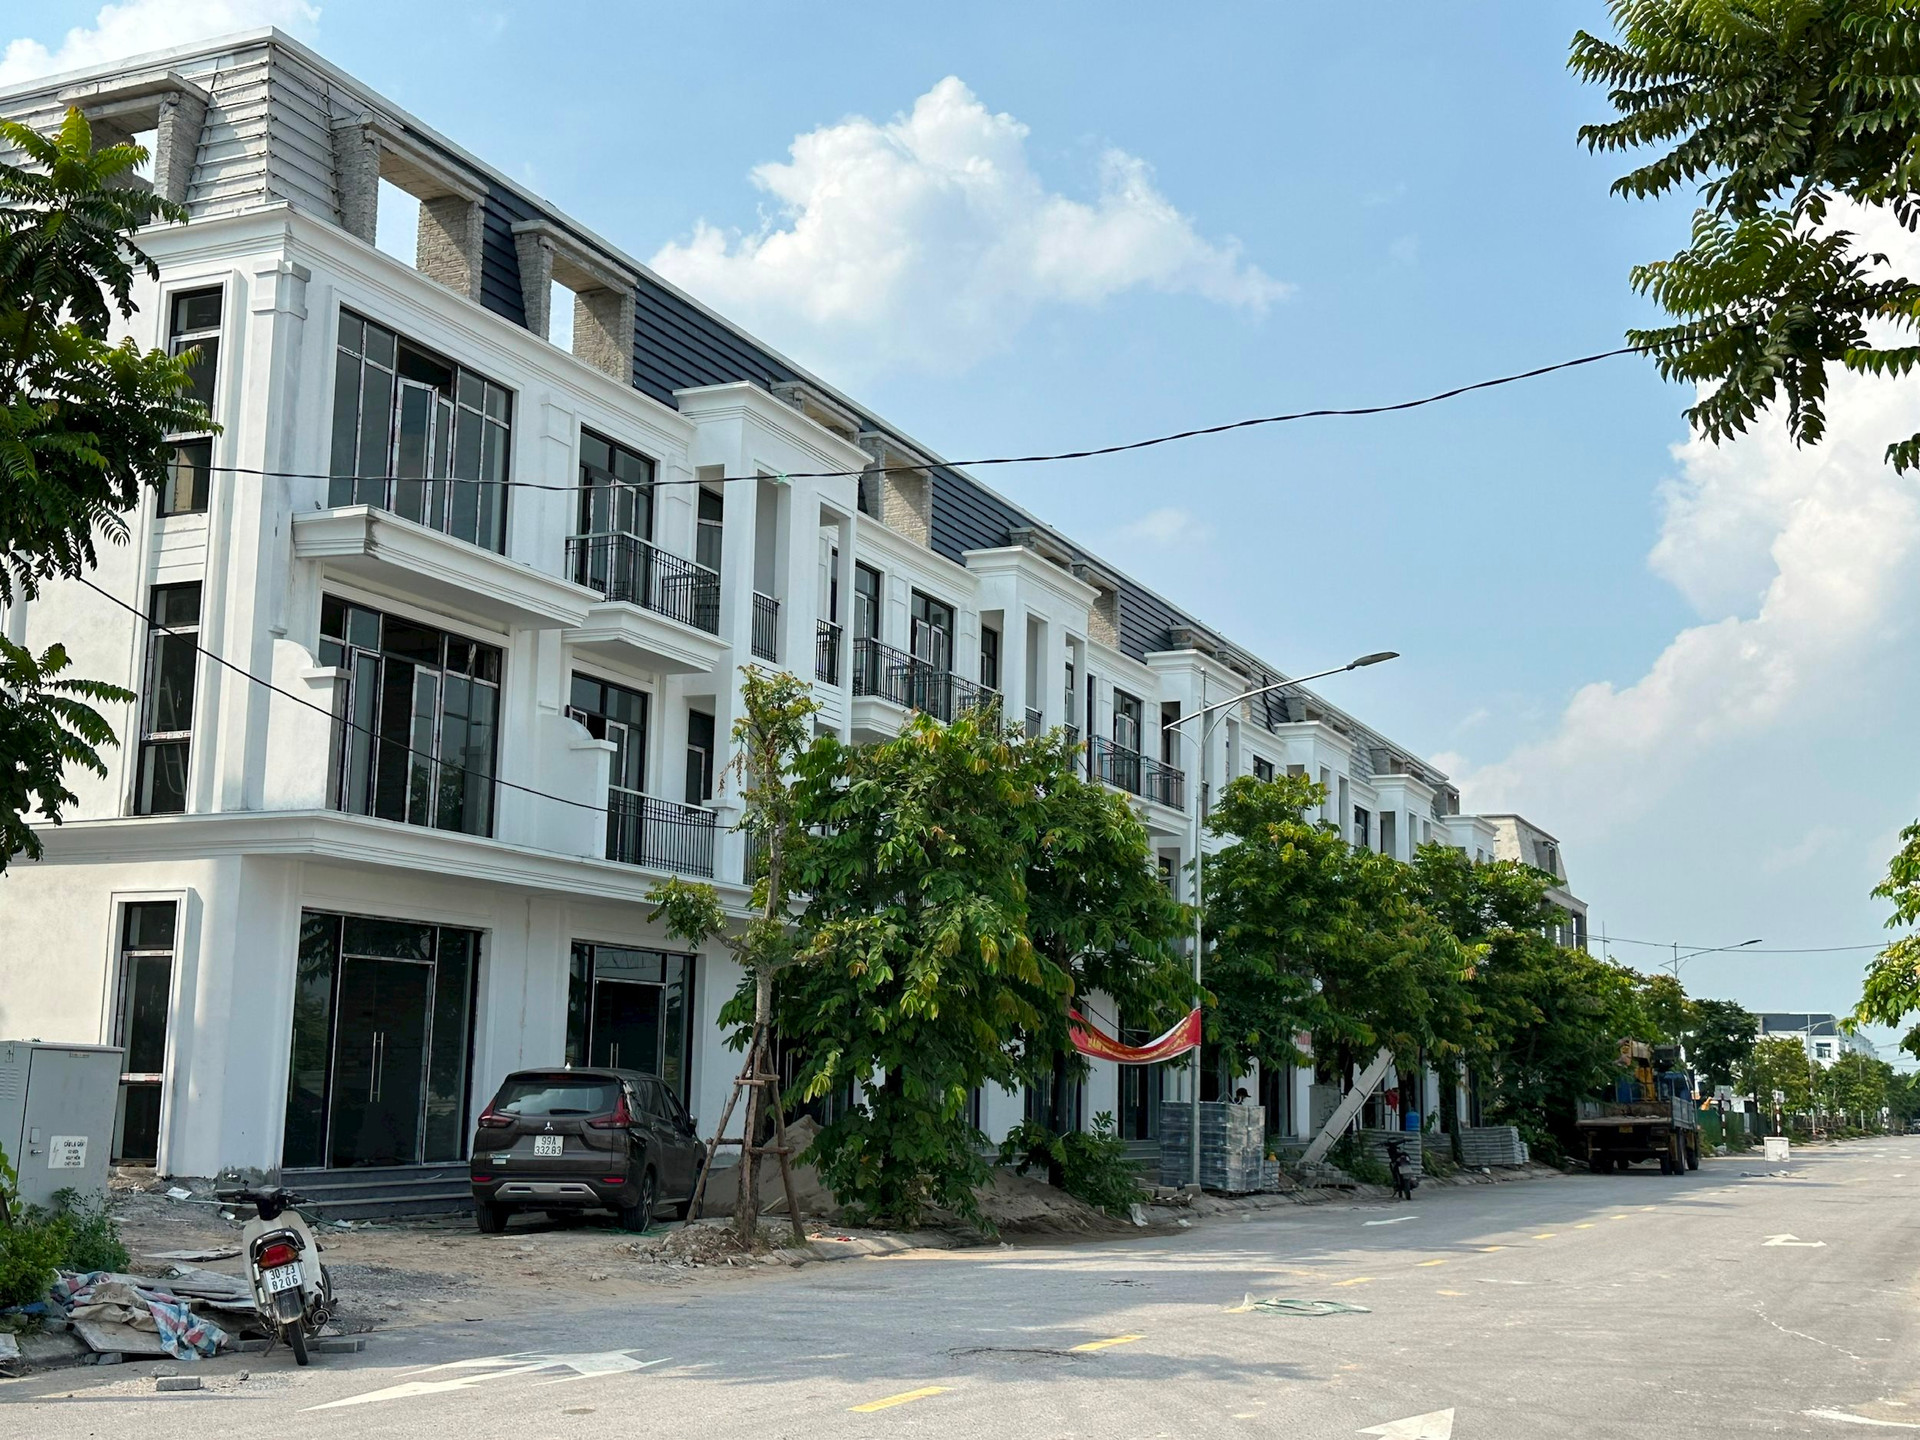 Một dự án bất động sản tại Hà Nội từng gây xôn xao khi mở bán trả giá công khai, nay giá thấp hơn gần 20%, môi giới chào mời: “Sẽ tăng gấp 2 lần trong 3 năm” - Ảnh 3.